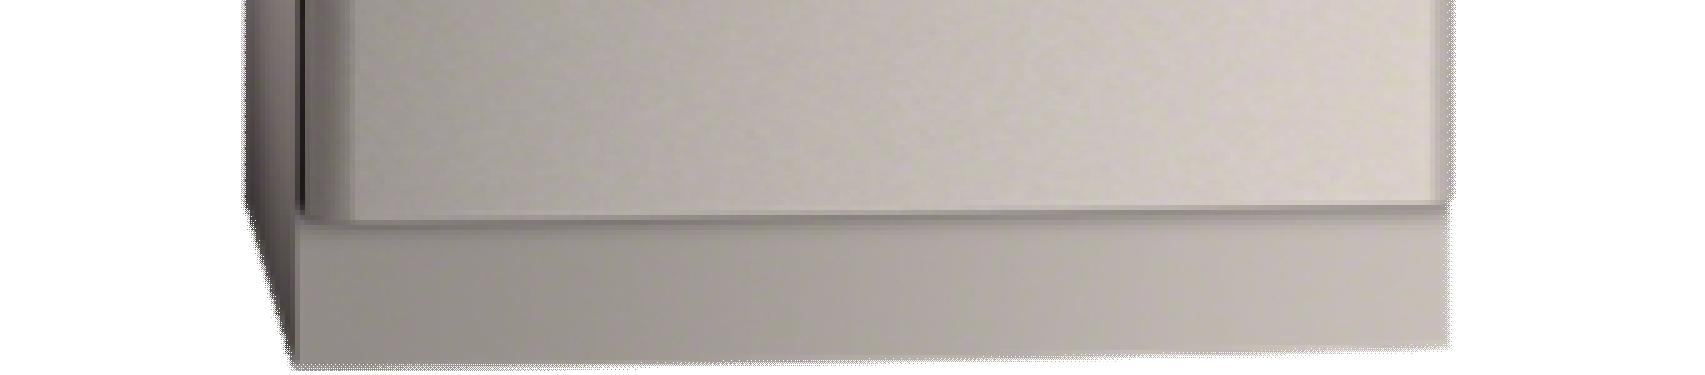 KEITTIÖN KODINKONEET (kalustekaavion mukaisesti) Liesikupu (Iloxair) Ilox Basic väri alumiinin harmaa kirkas lasilippa valo ja rasvasuodatin leveys 60 cm Kuva viitteellinen Kalusteuuni (AEG)